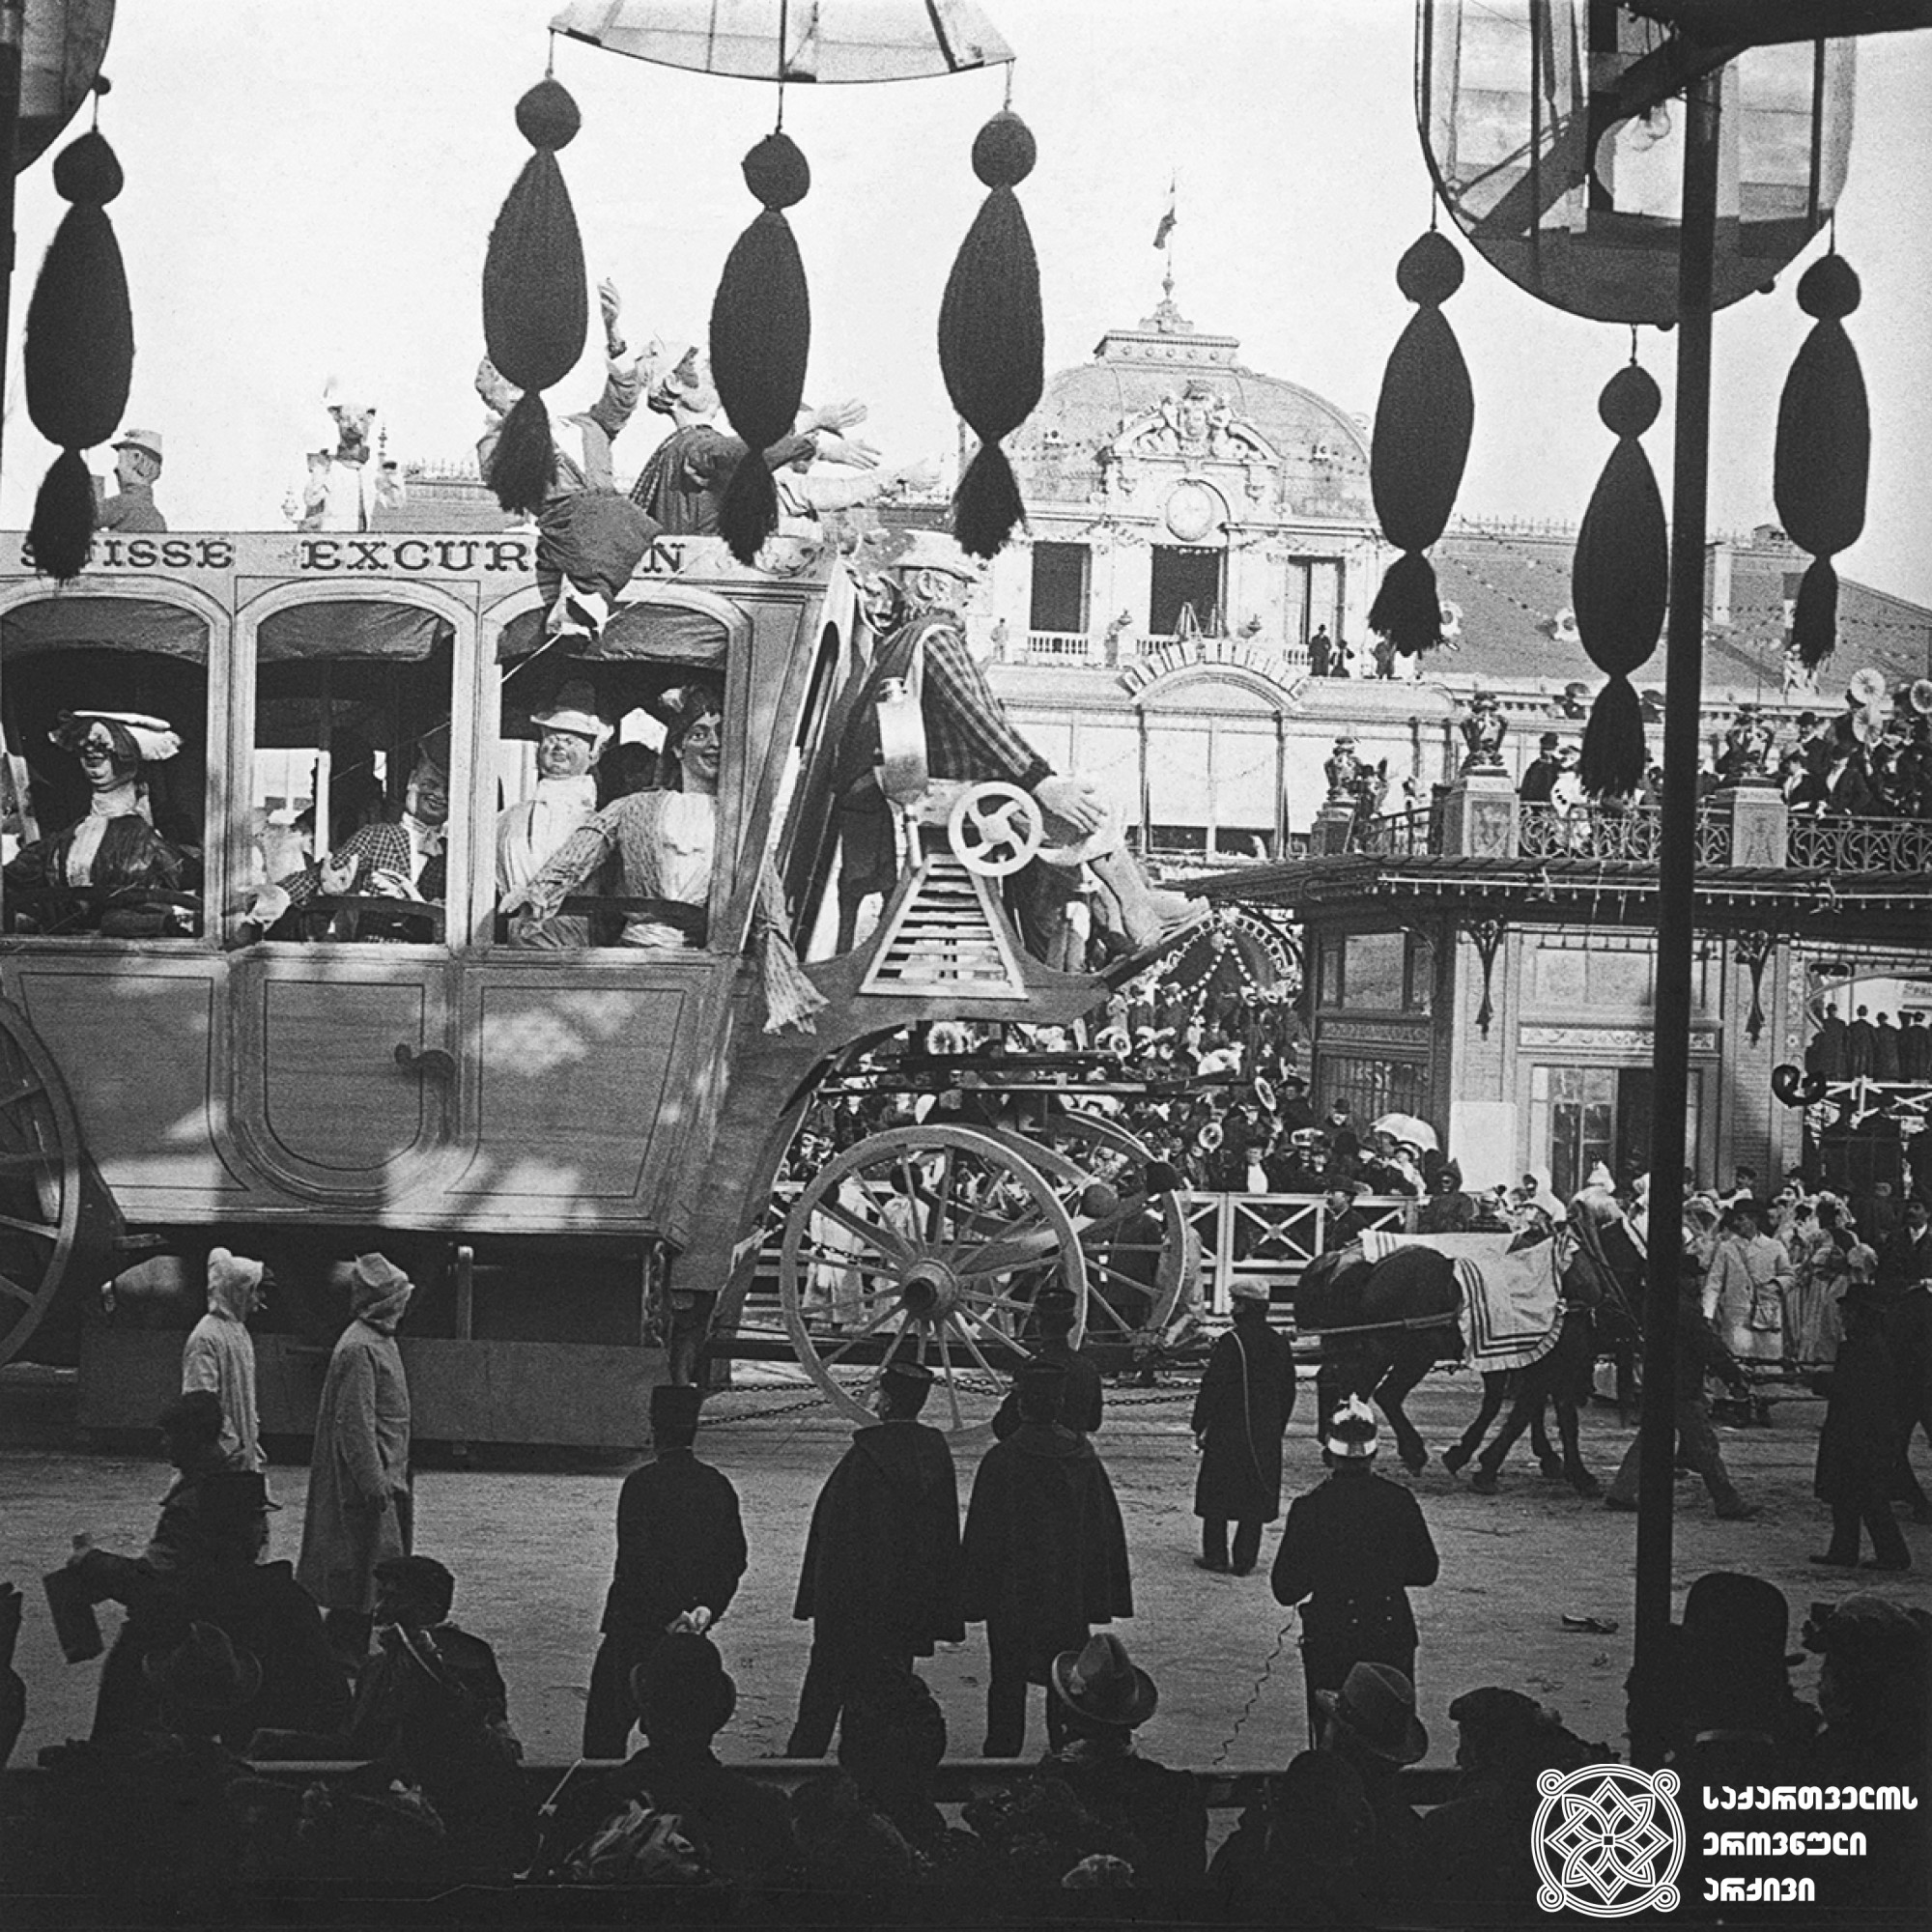 კარნავალი ნიცაში, საფრანგეთი <br>
1906 წლის ივლისი  <br>
გიგლო ყარალაშვილის კოლექცია <br>

Carnival in Nice, France <br> 
July, 1906 <br>
Giglo Karalashvili collection